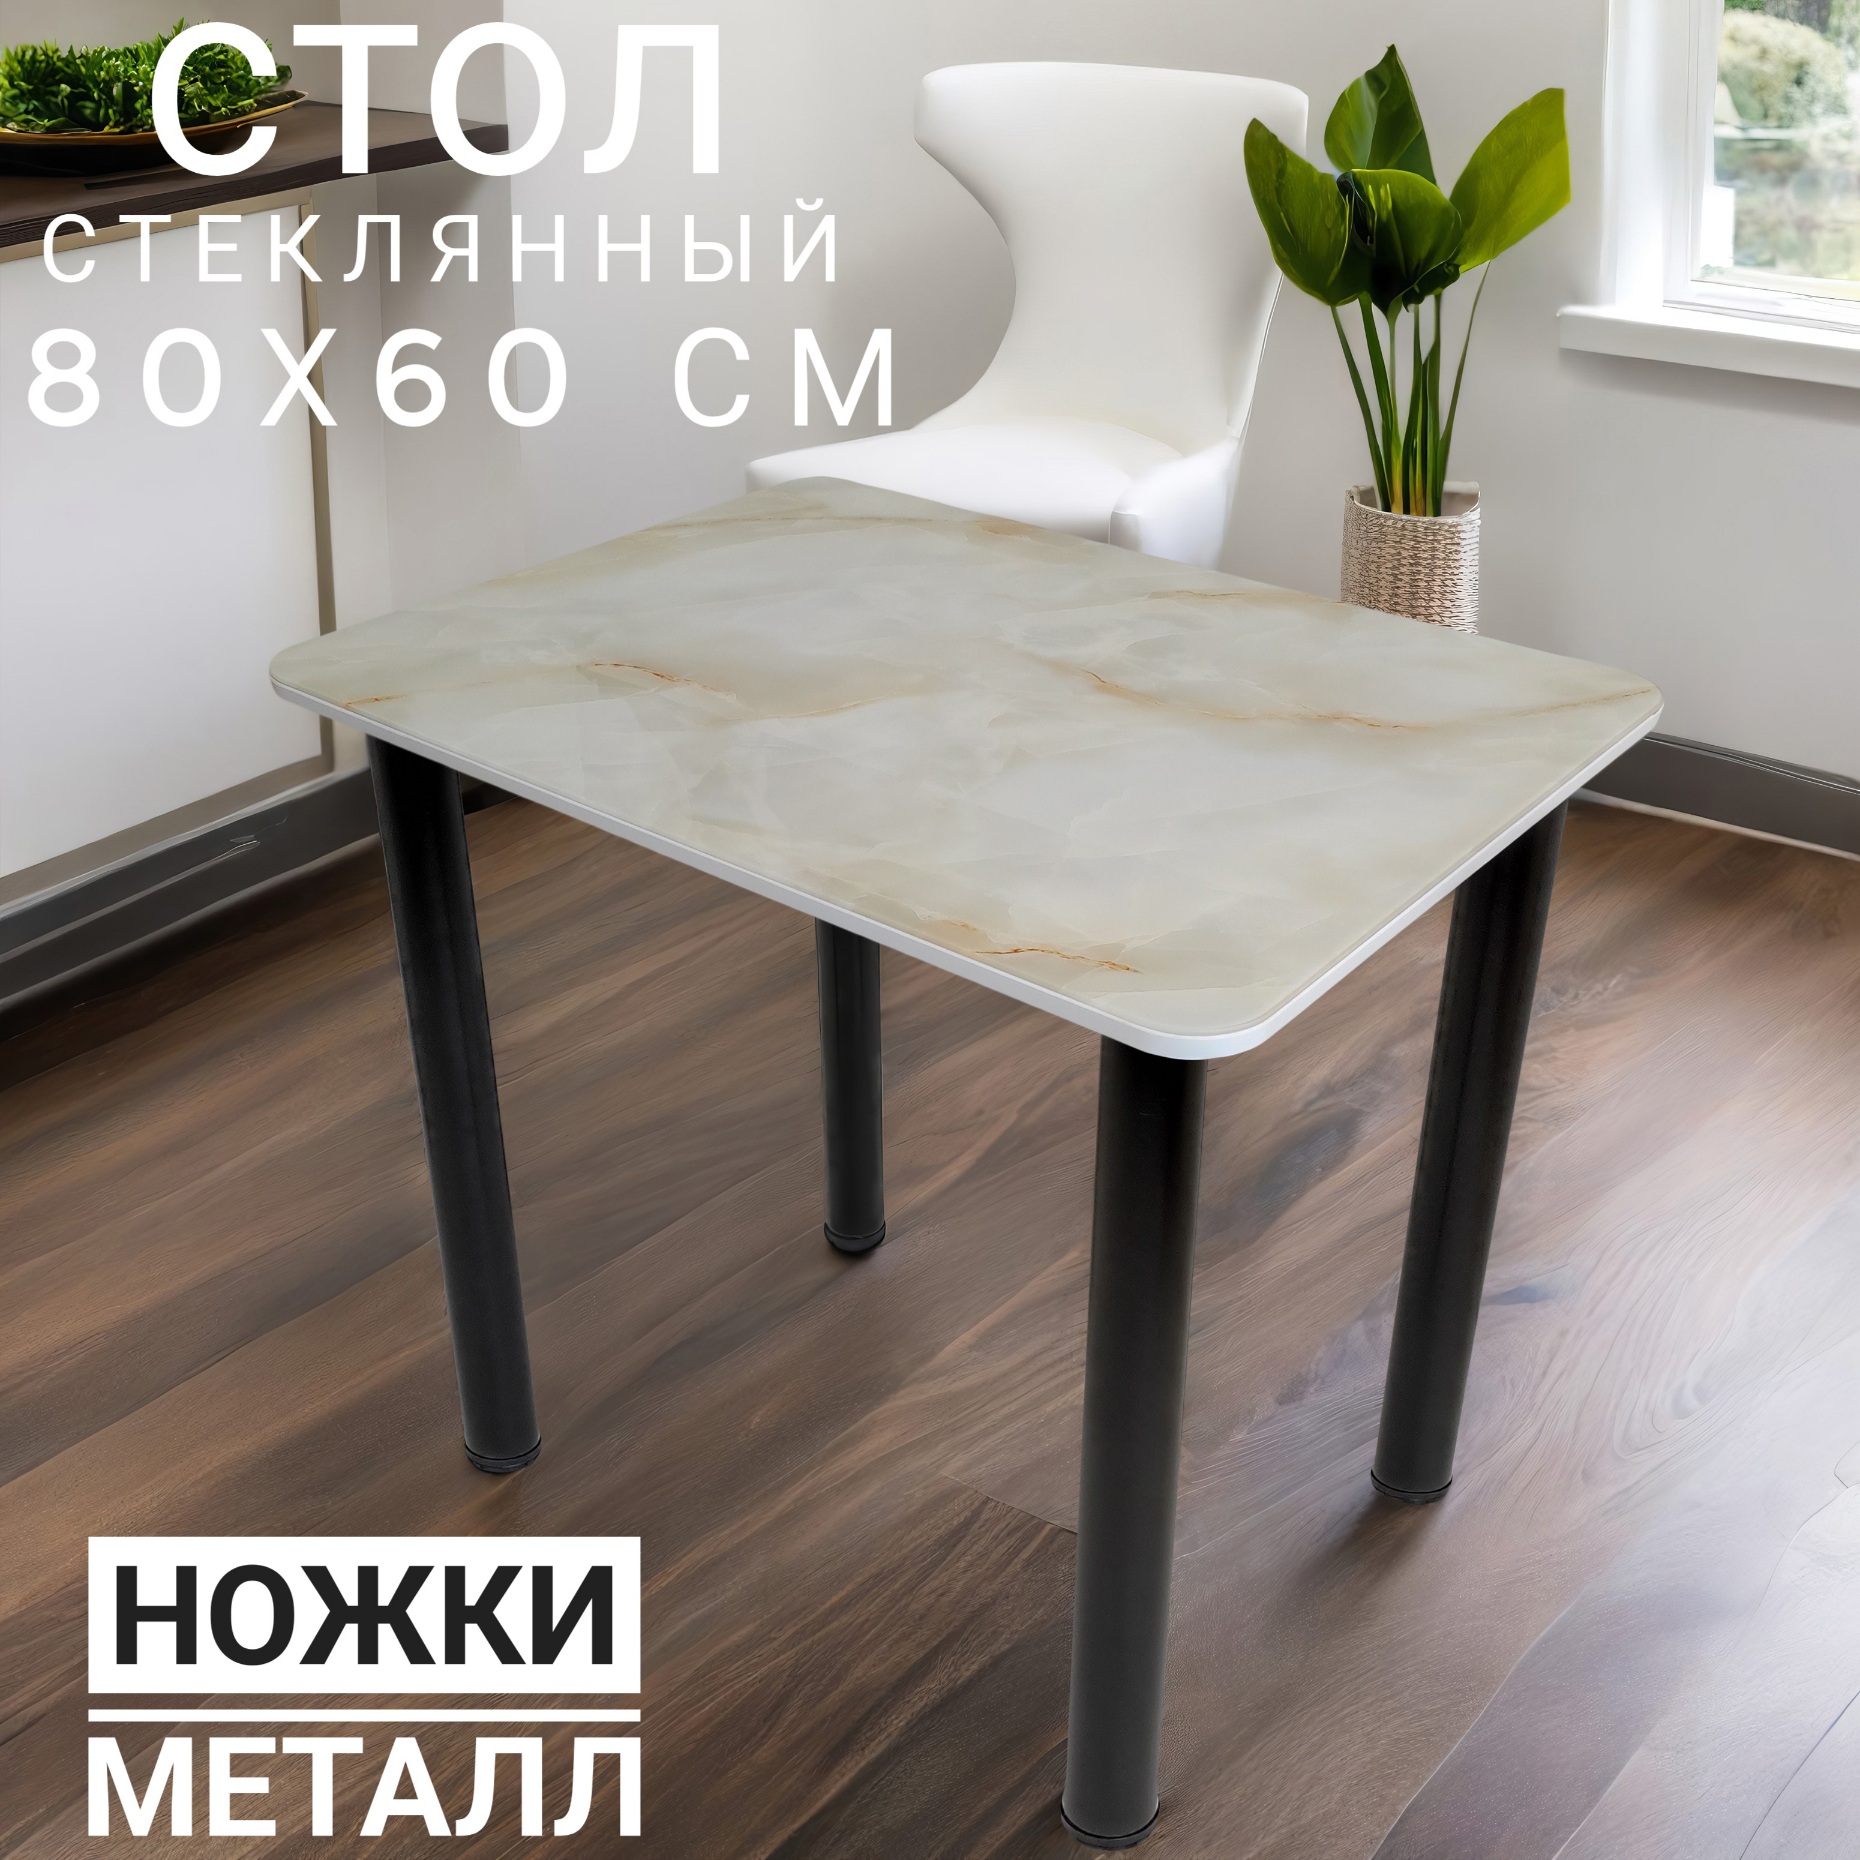 Стол кухонный белый мрамор с золотом 80х60 см. (арт. М4663)